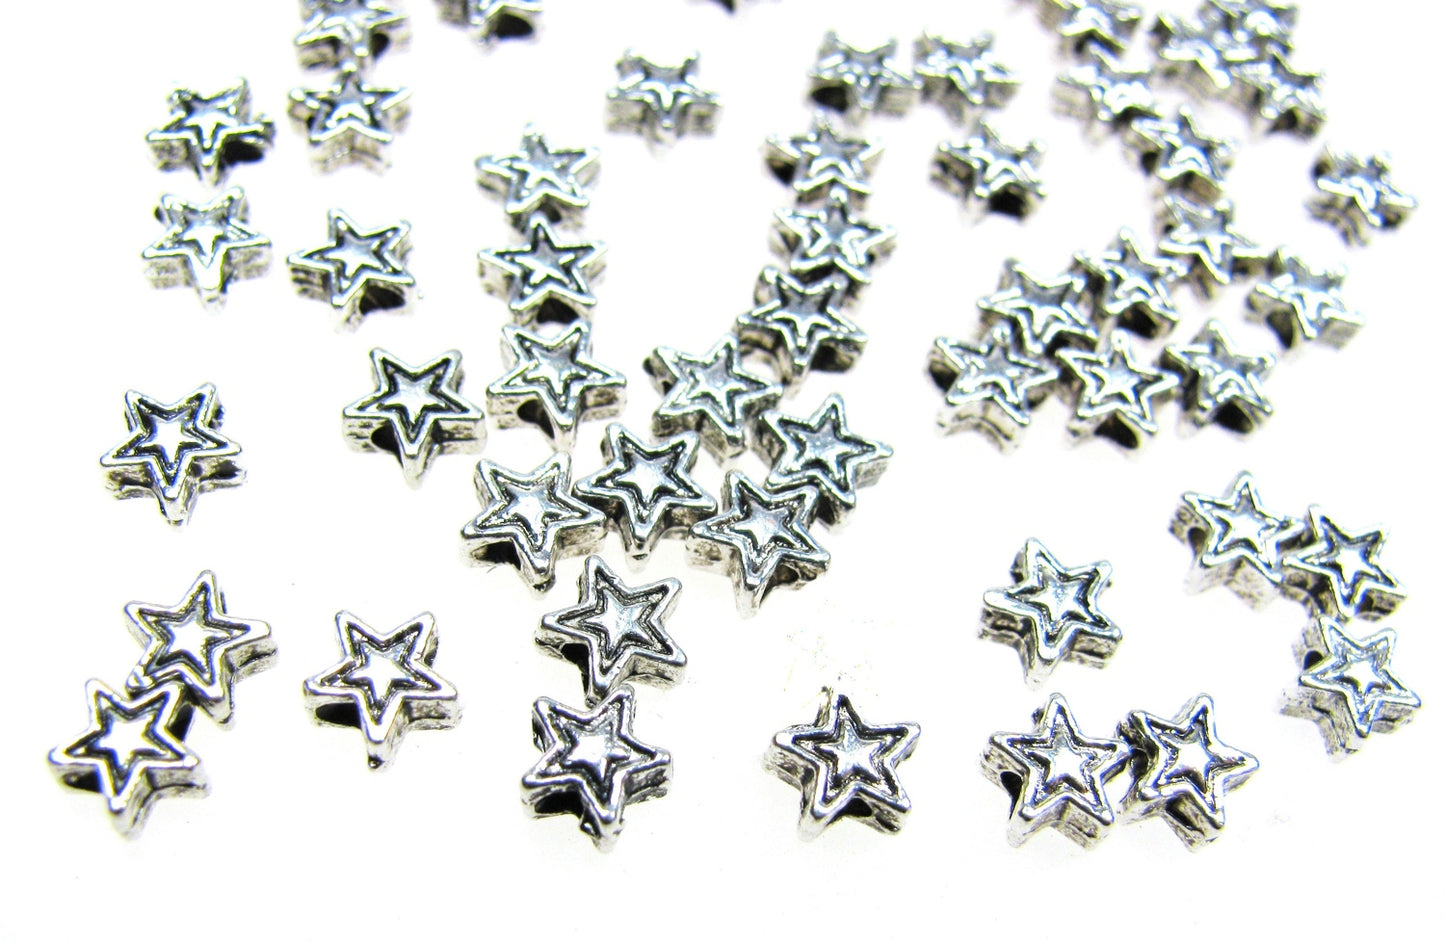 60 Metallperlen Stern 4mm, silberfarben, Spacer, Perlen, Zwischenperle